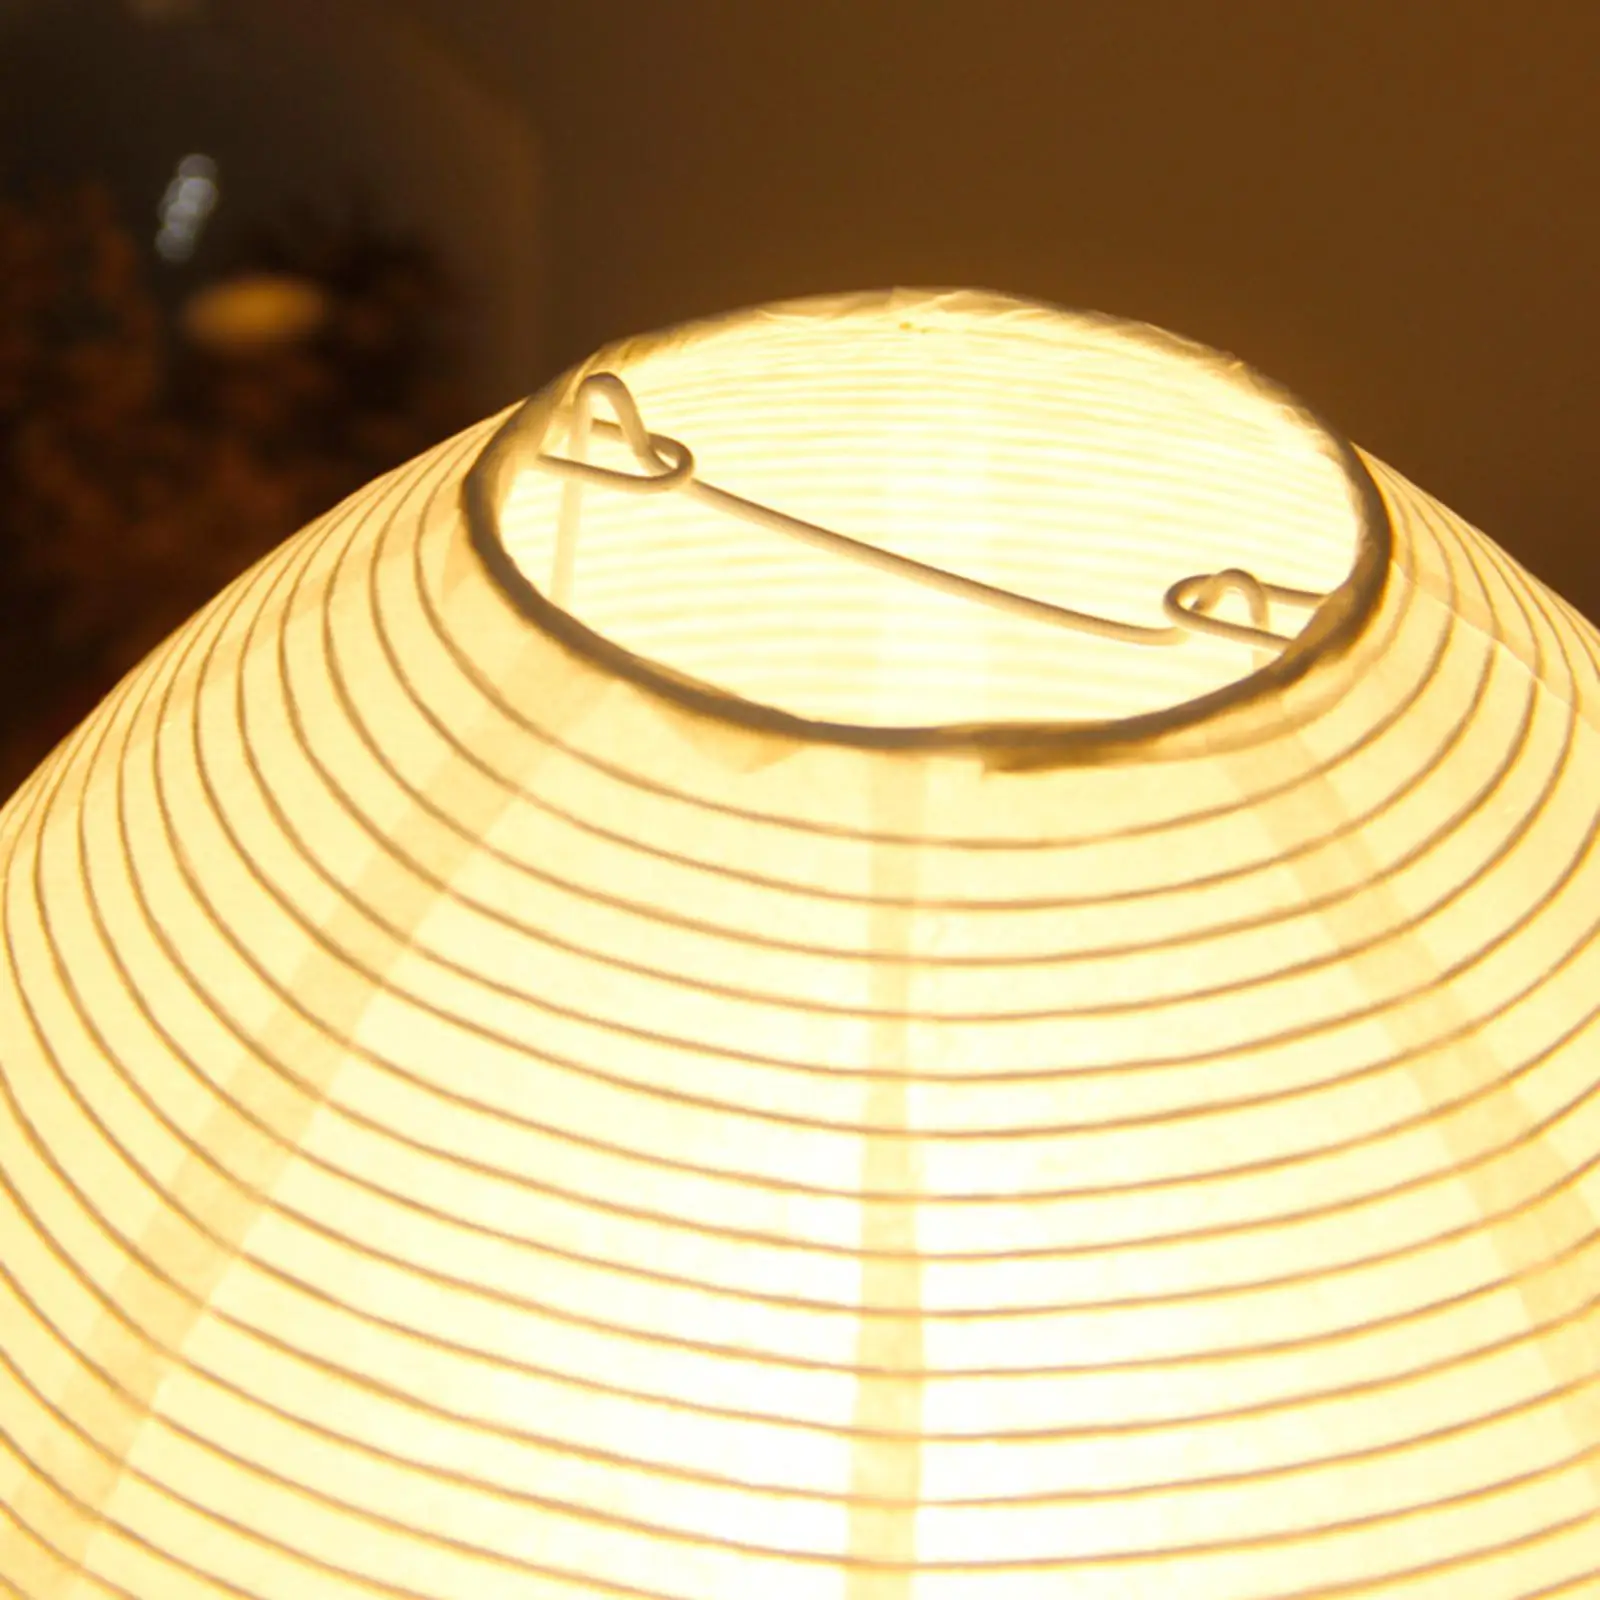 Paper Lantern Table Lamp Nightstand Lamp Desk Light for Dresser Living Room